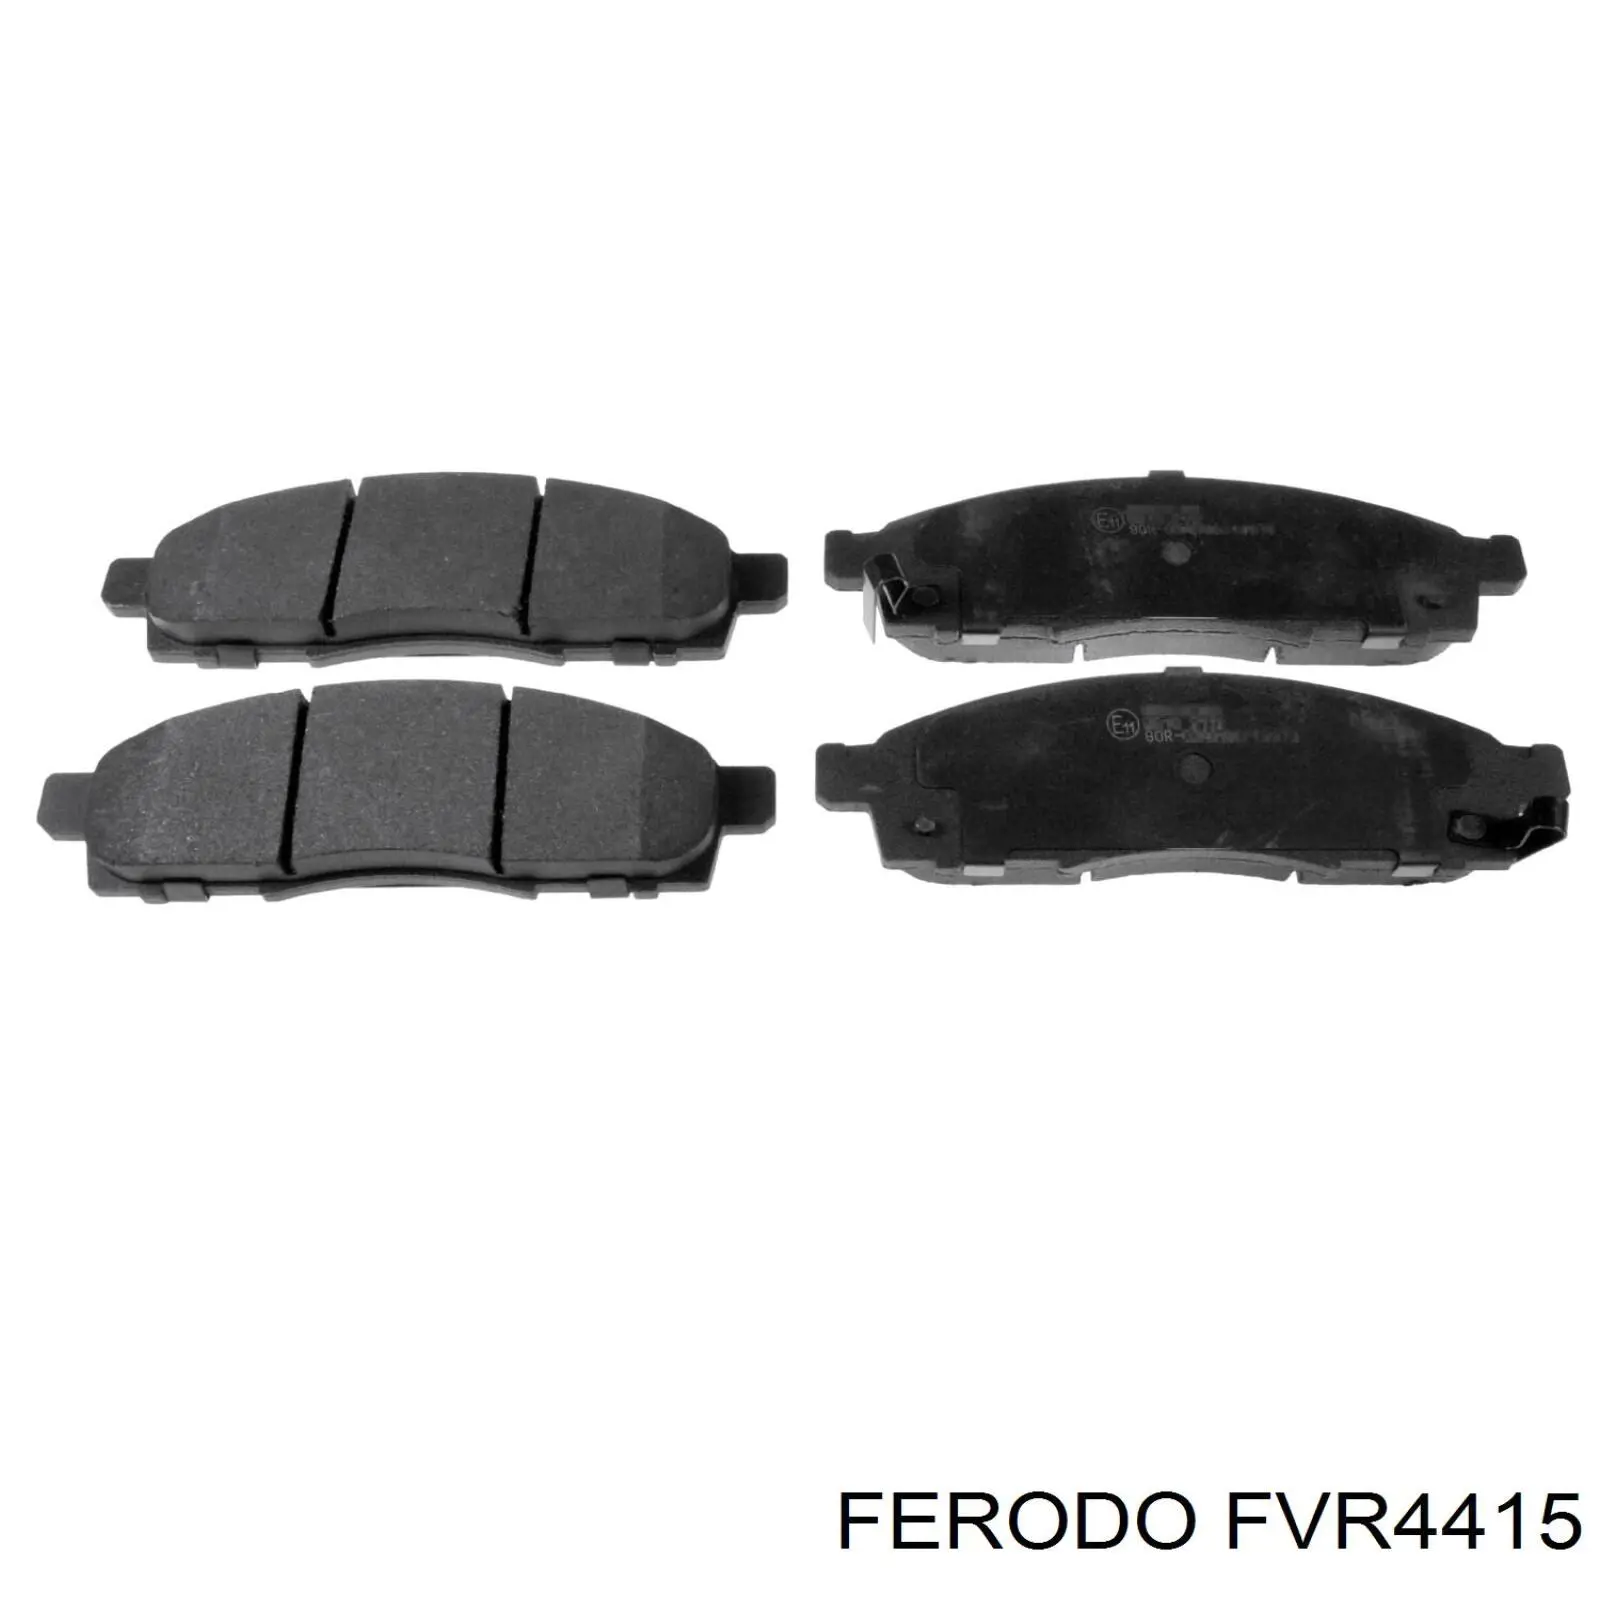 FVR4415 Ferodo pastillas de freno delanteras